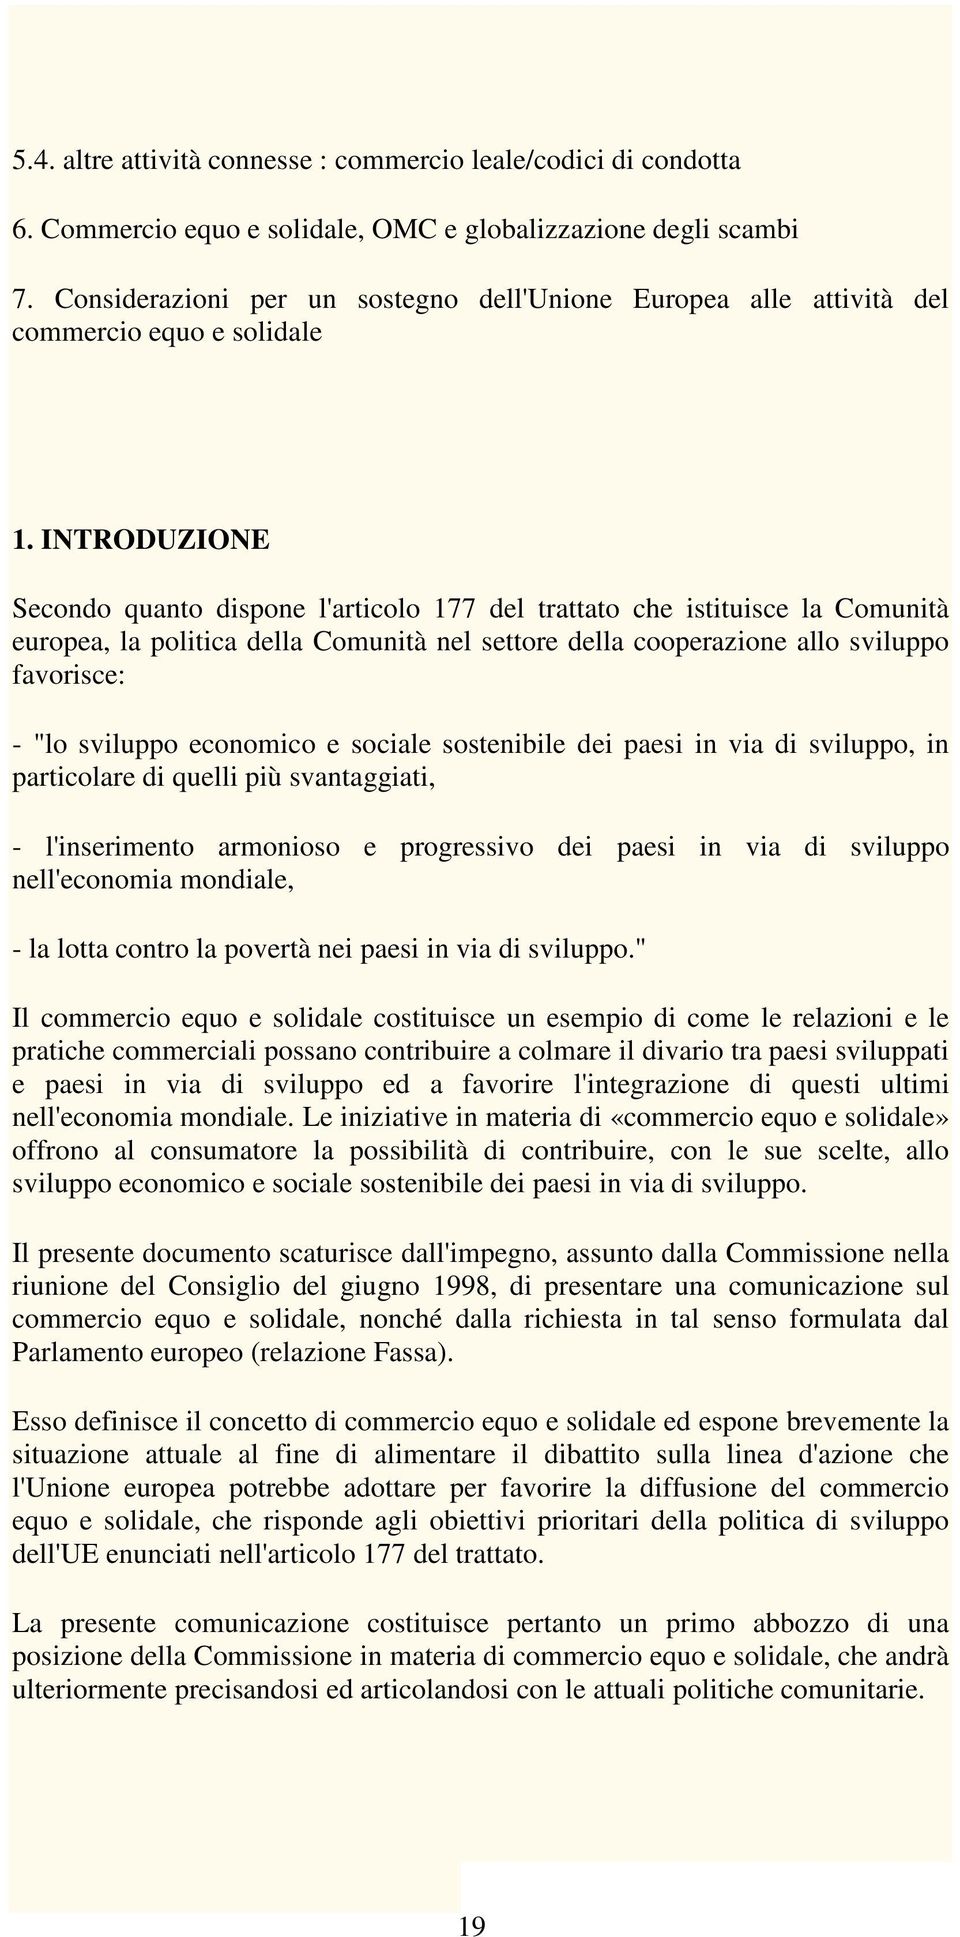 INTRODUZIONE Secondo quanto dispone l'articolo 177 del trattato che istituisce la Comunità europea, la politica della Comunità nel settore della cooperazione allo sviluppo favorisce: - "lo sviluppo